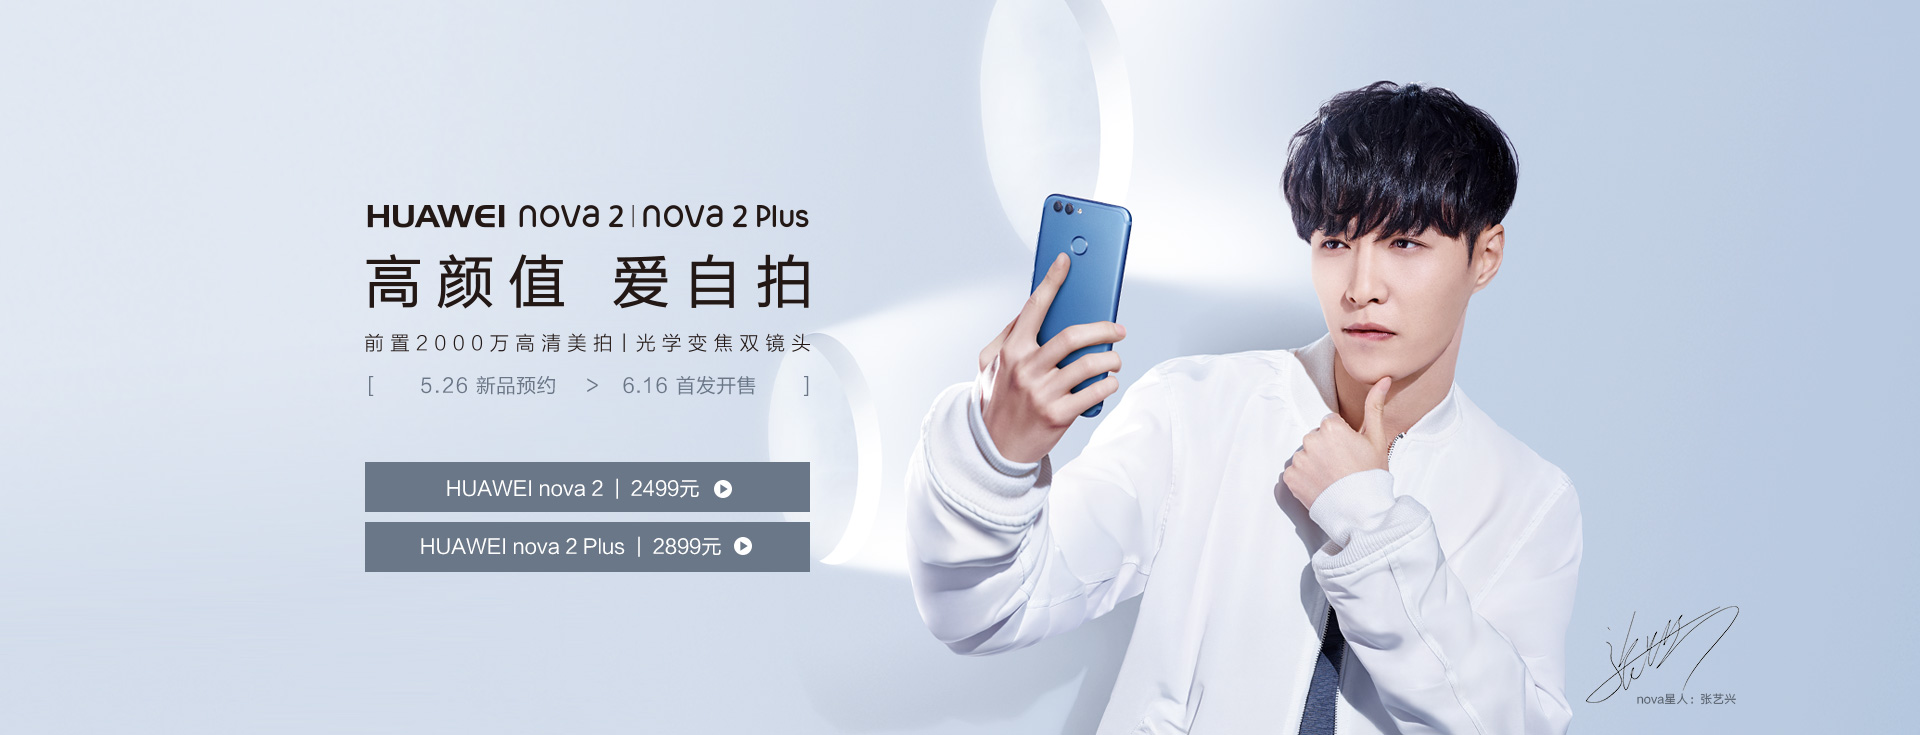 Imagen publicitaria de Vmall del Huawei Nova 2 Plus azul.